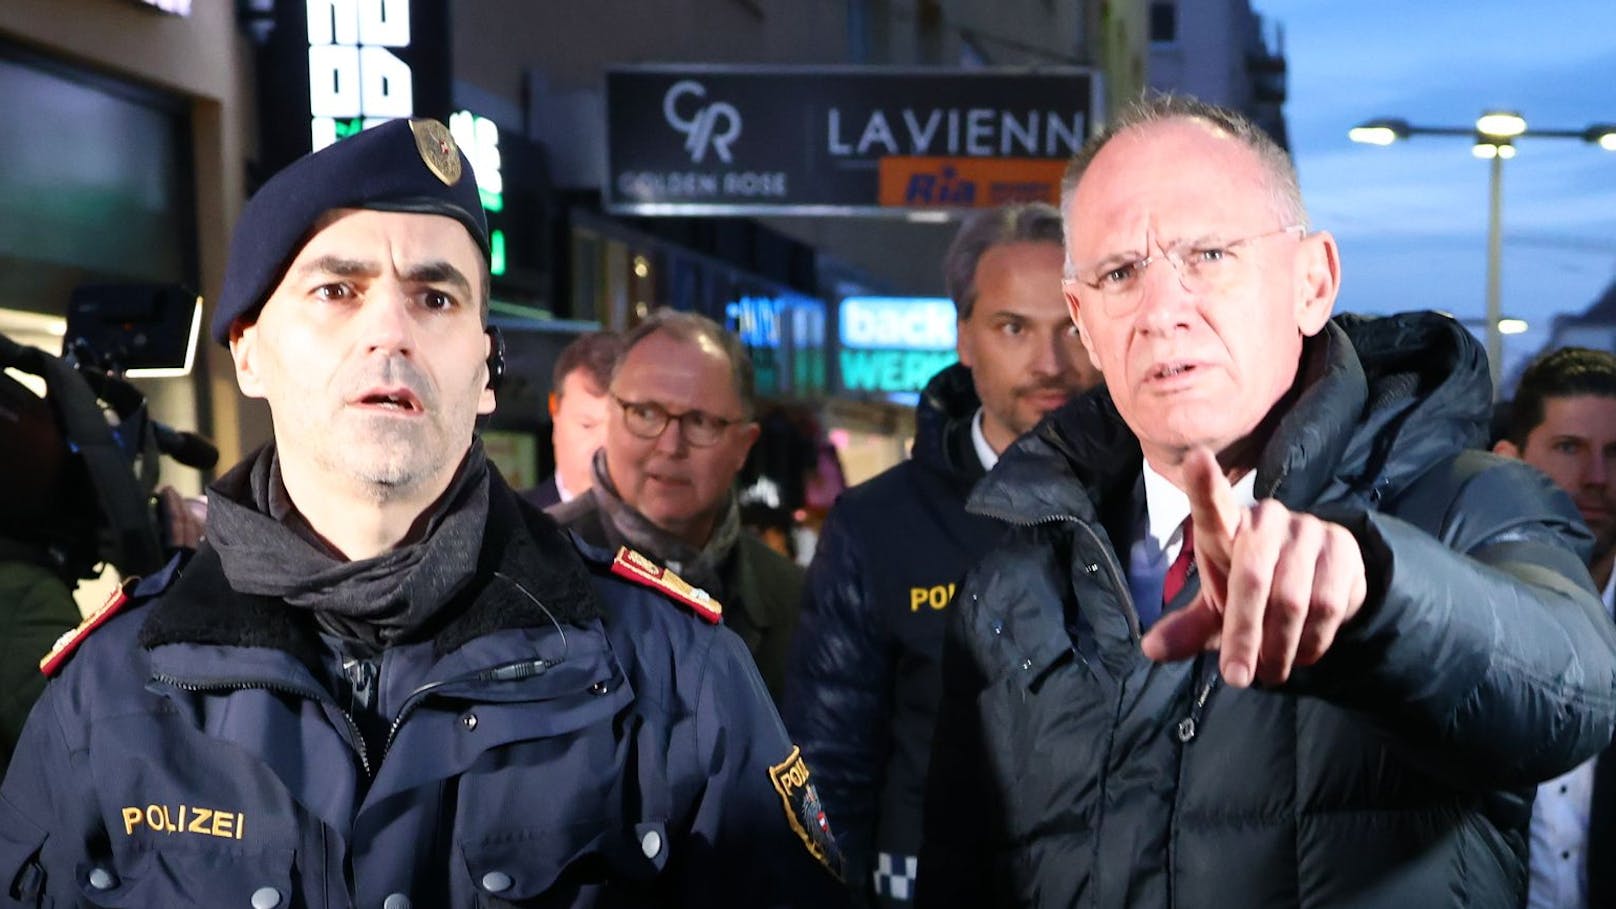 VIDEO: Minister und Polizei greifen in Favoriten durch